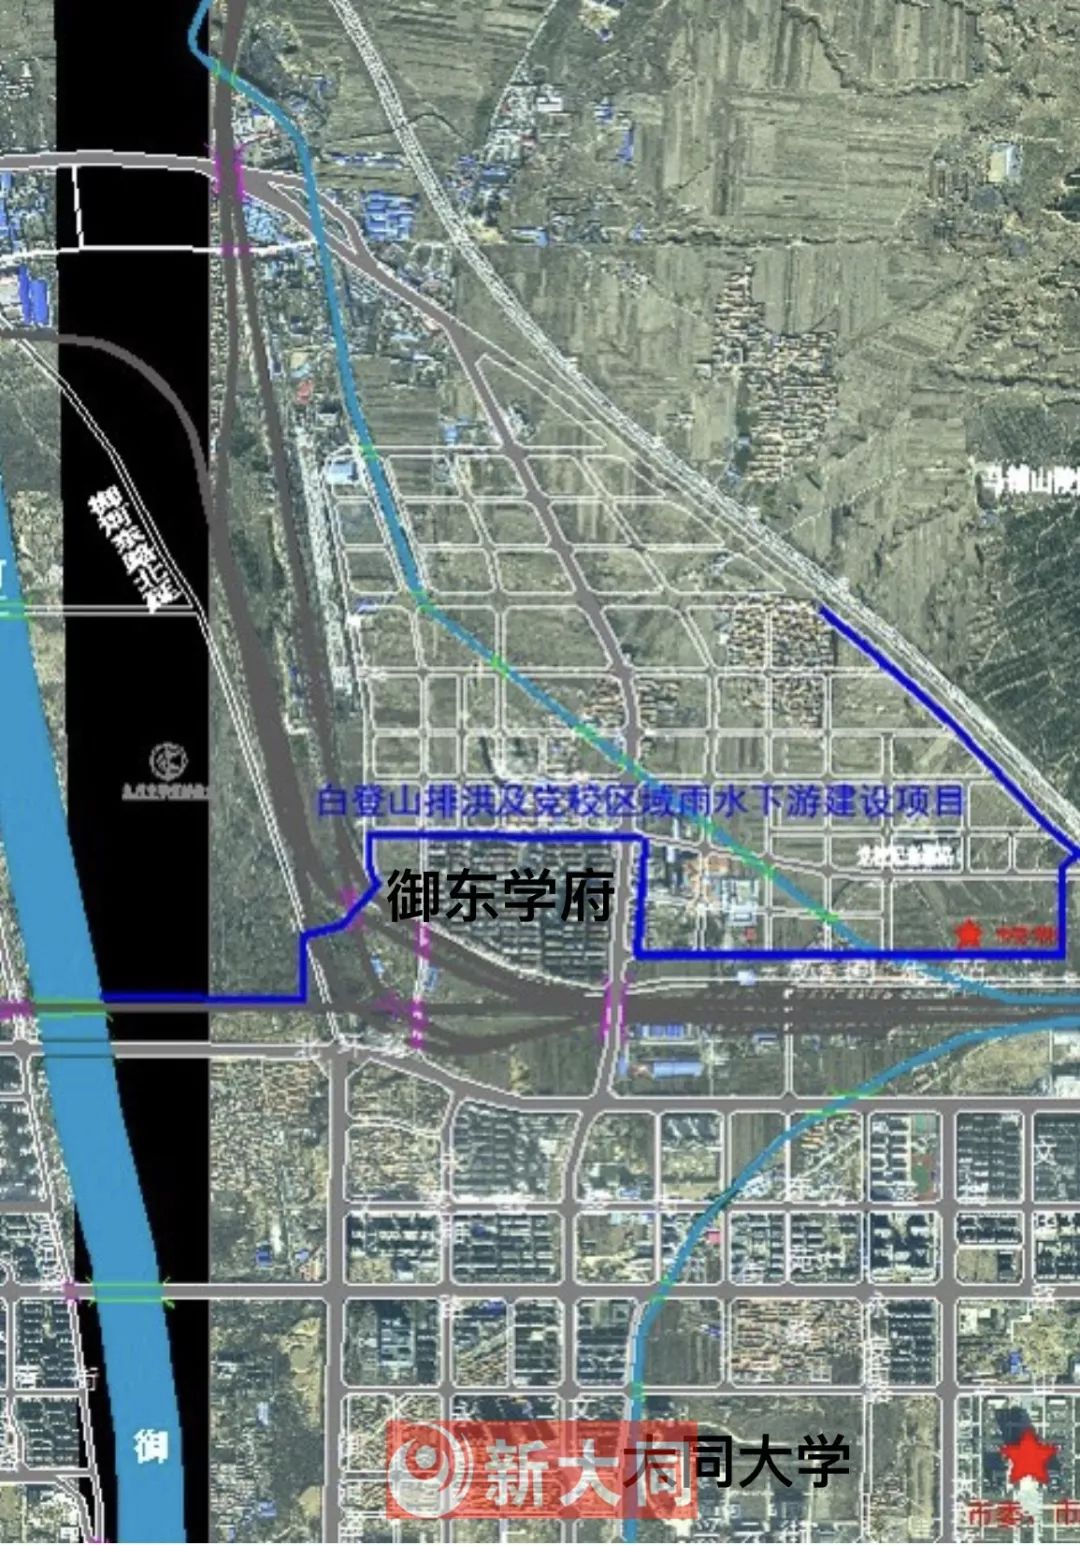 2019大同市政工程建设计划公示 | 御河西路快速路,操场城街.